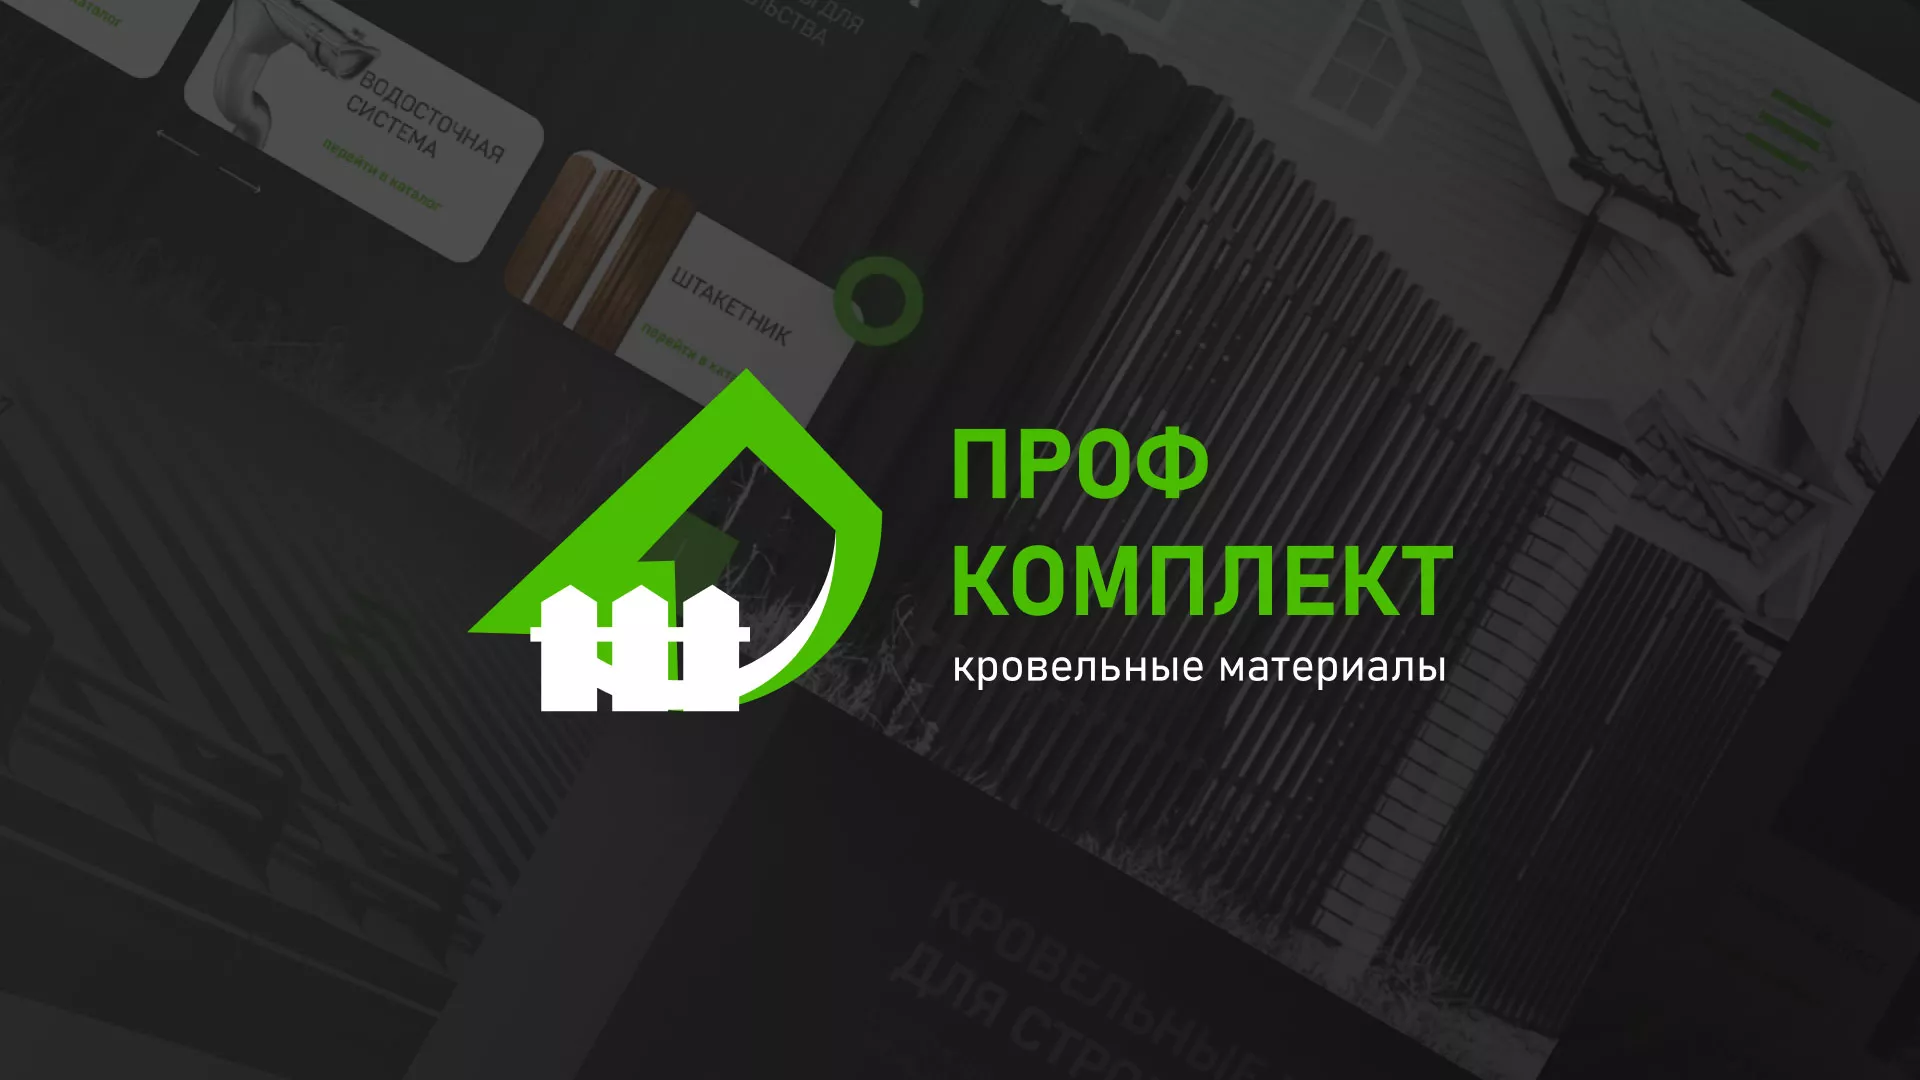 Создание сайта компании «Проф Комплект» в Таганроге